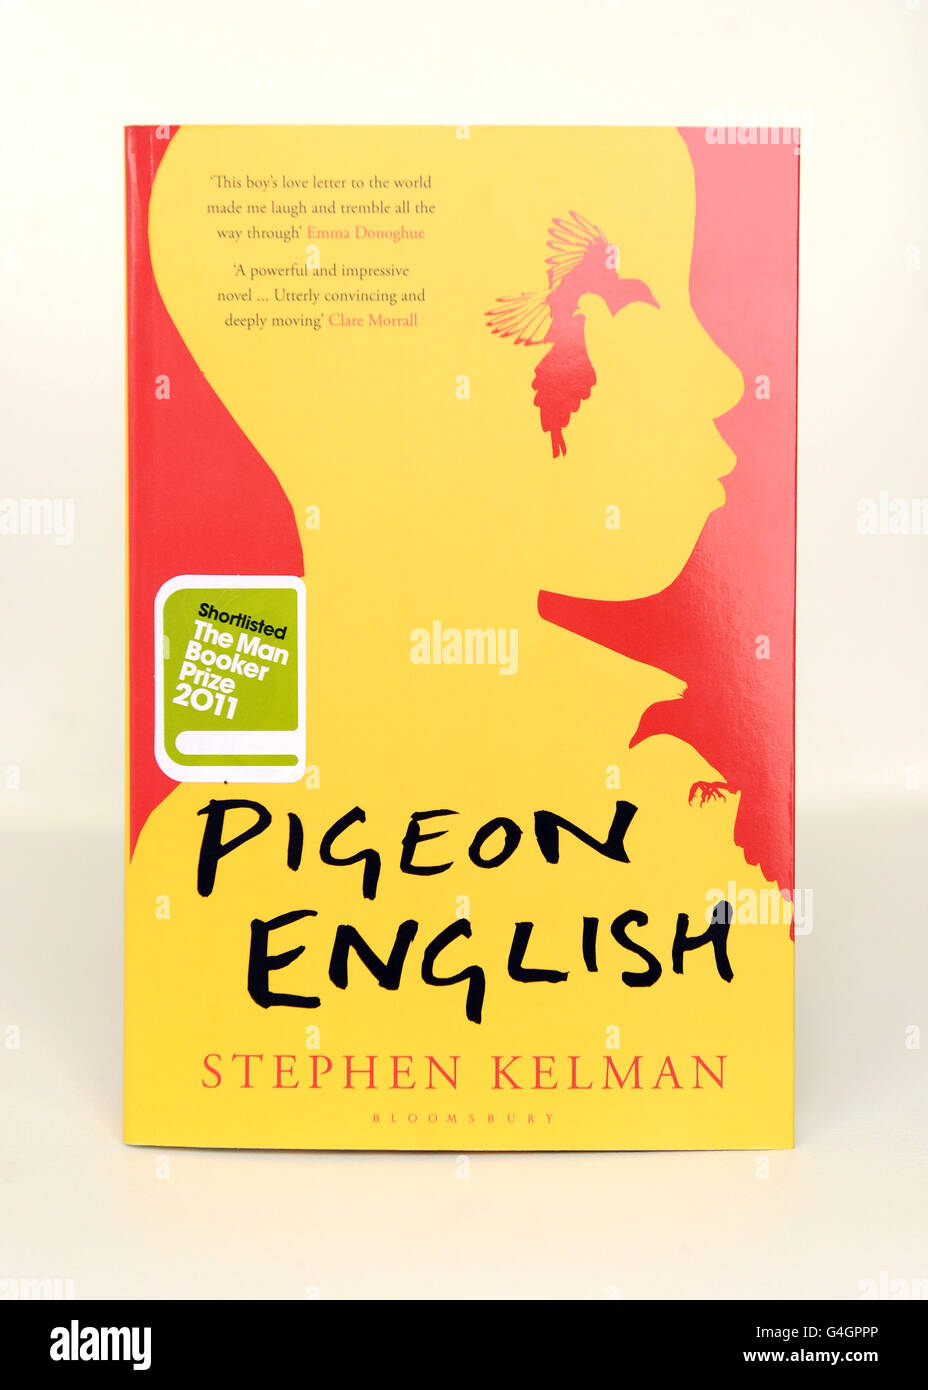 'Pigeon English' di Stephen Kelman, uno dei sei libri selezionati per il Man Booker Prize 2011. Foto Stock